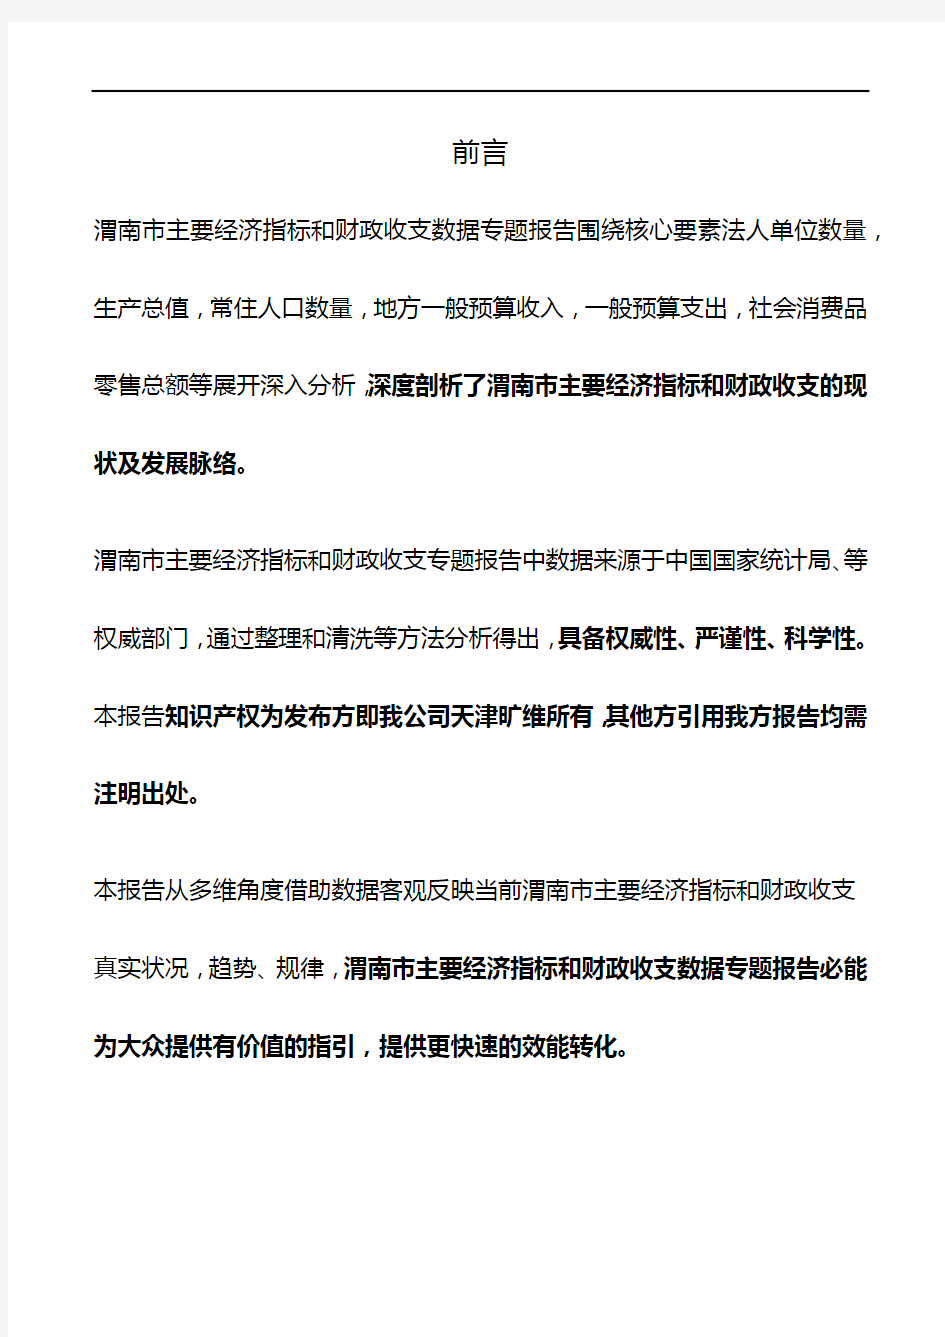 陕西省渭南市主要经济指标和财政收支3年数据专题报告2020版